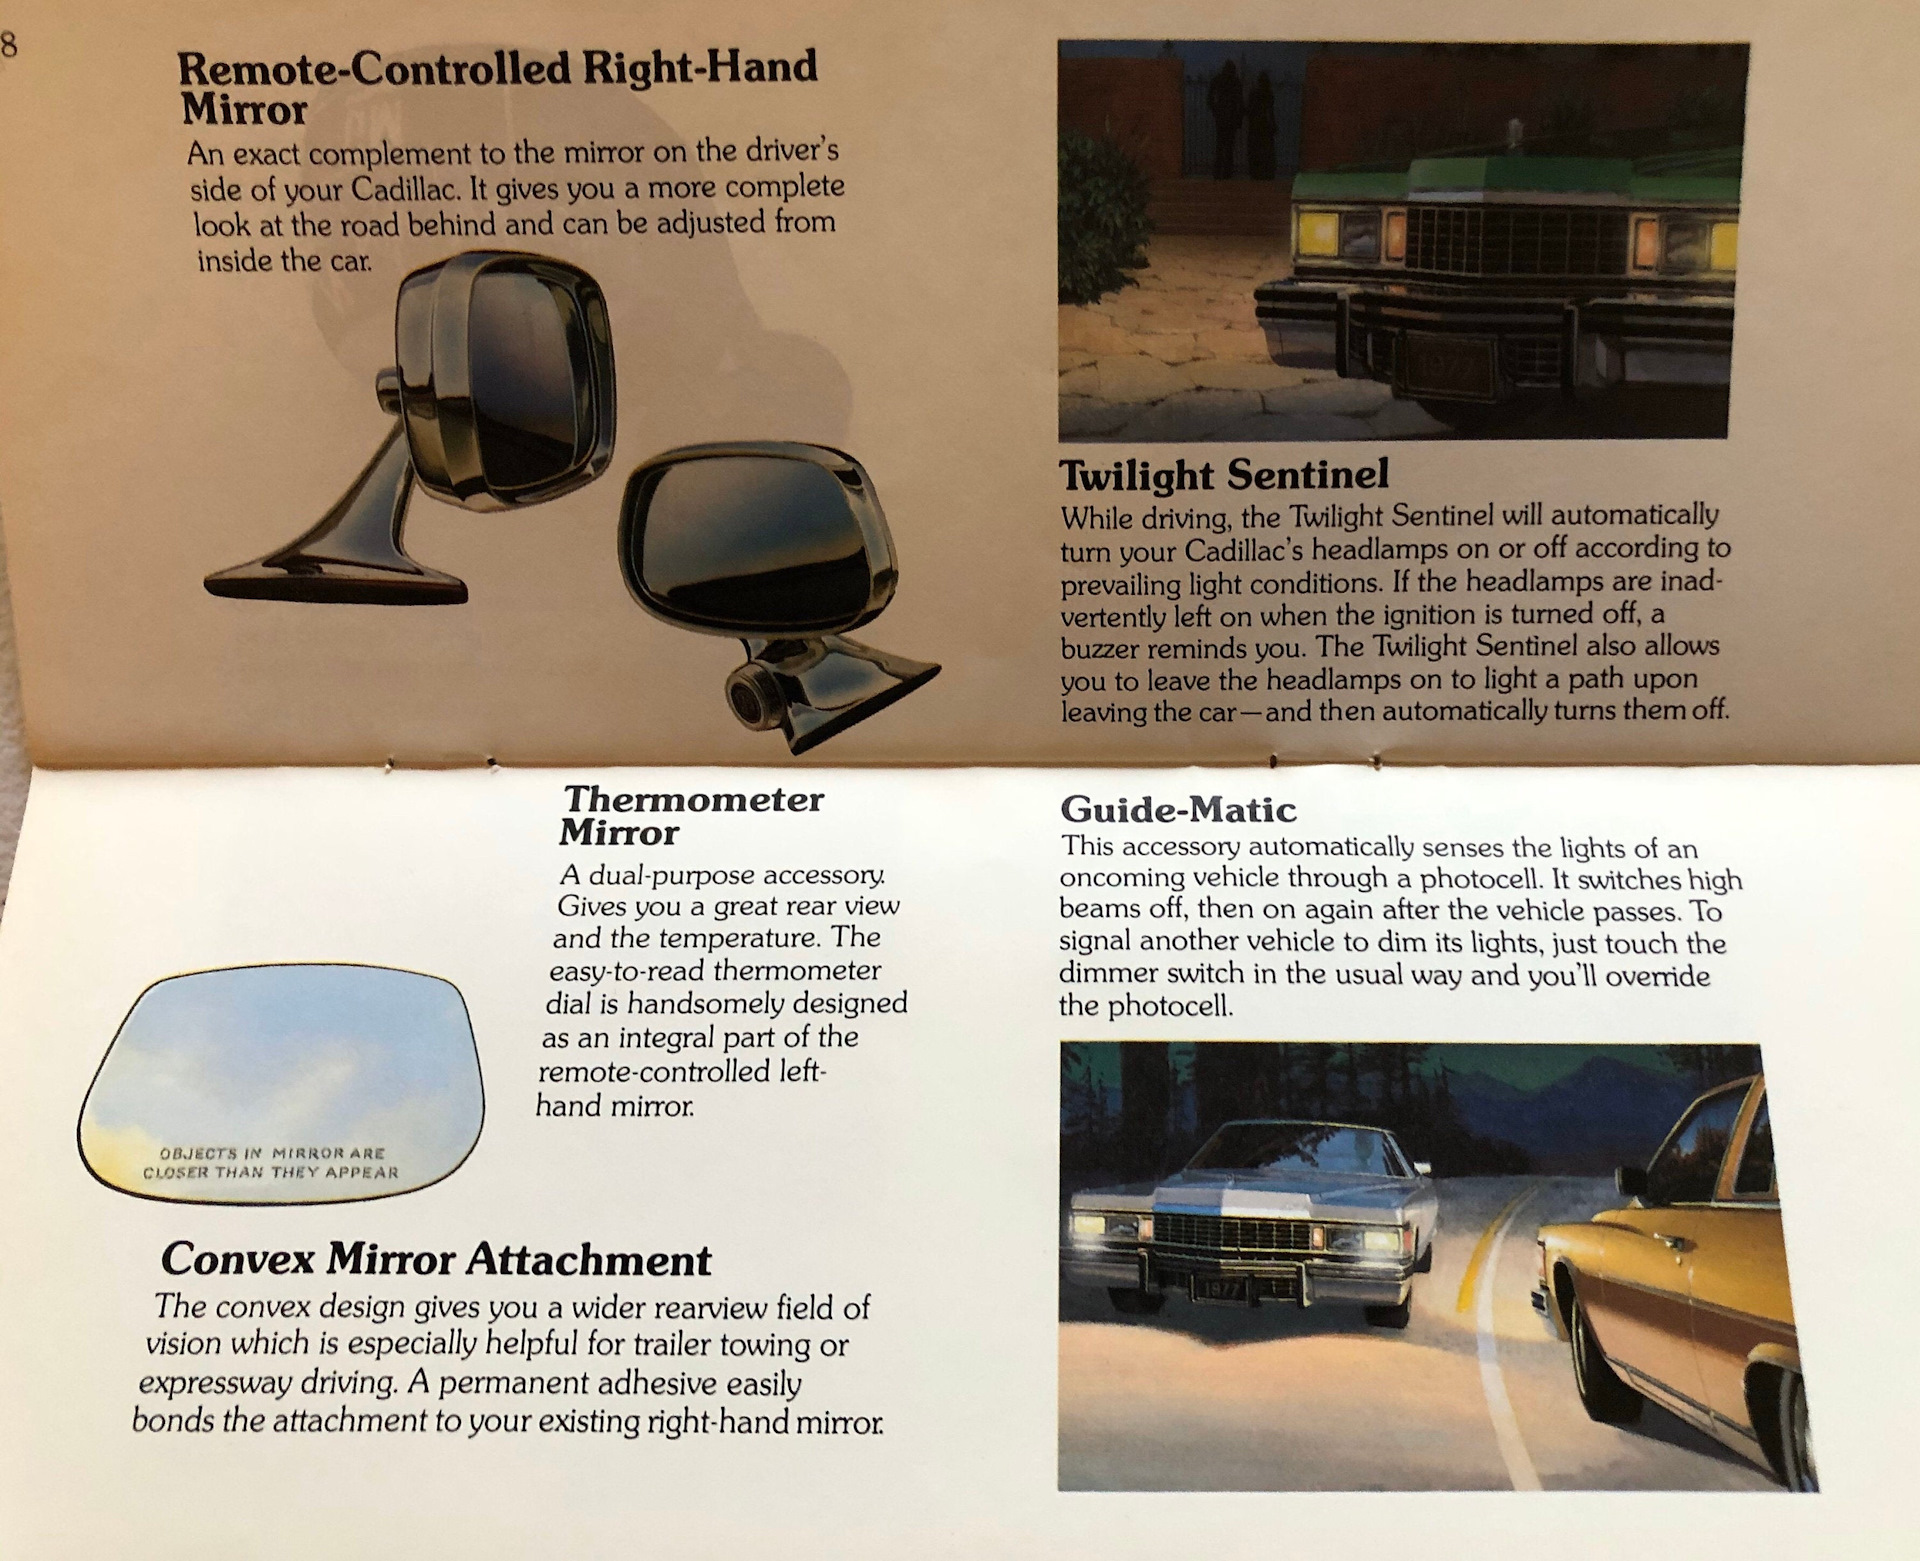 1977 год для Cadillac — меньше, не значит хуже 